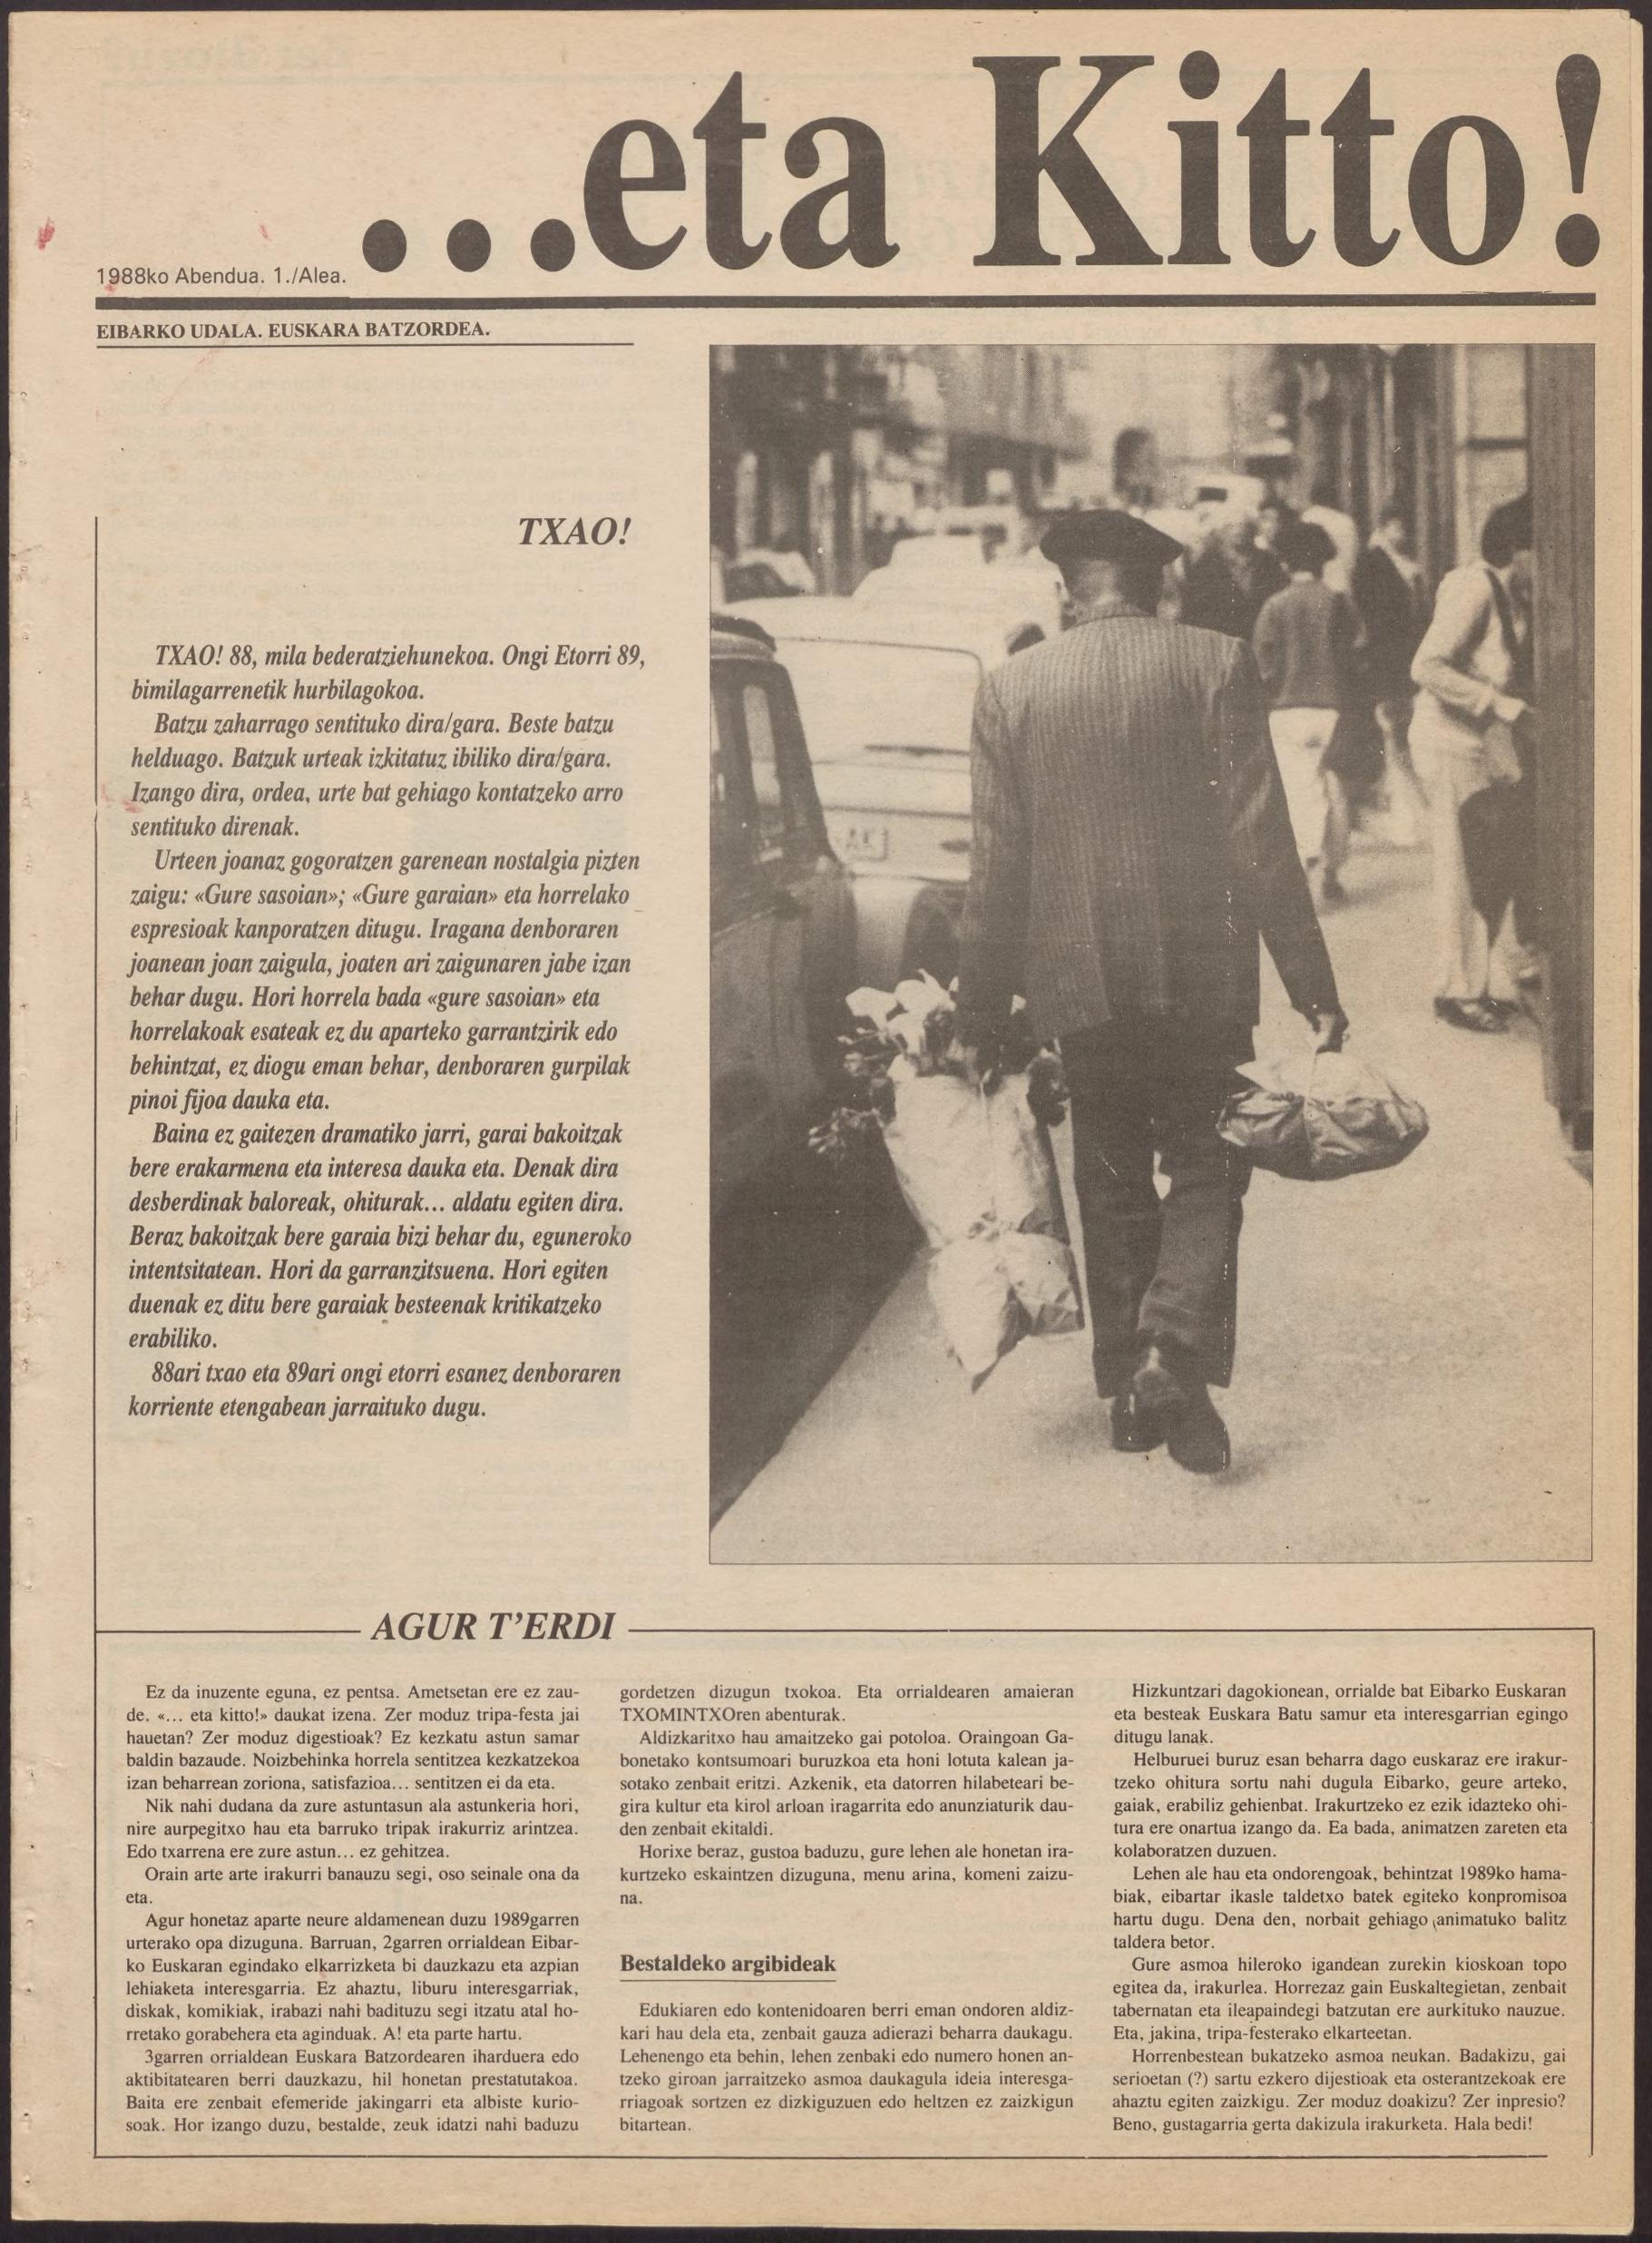 Ego Ibarra 2015: digitalización y difusión en red de la revista municipal “…eta kitto!” del periodo 1988-1991. 